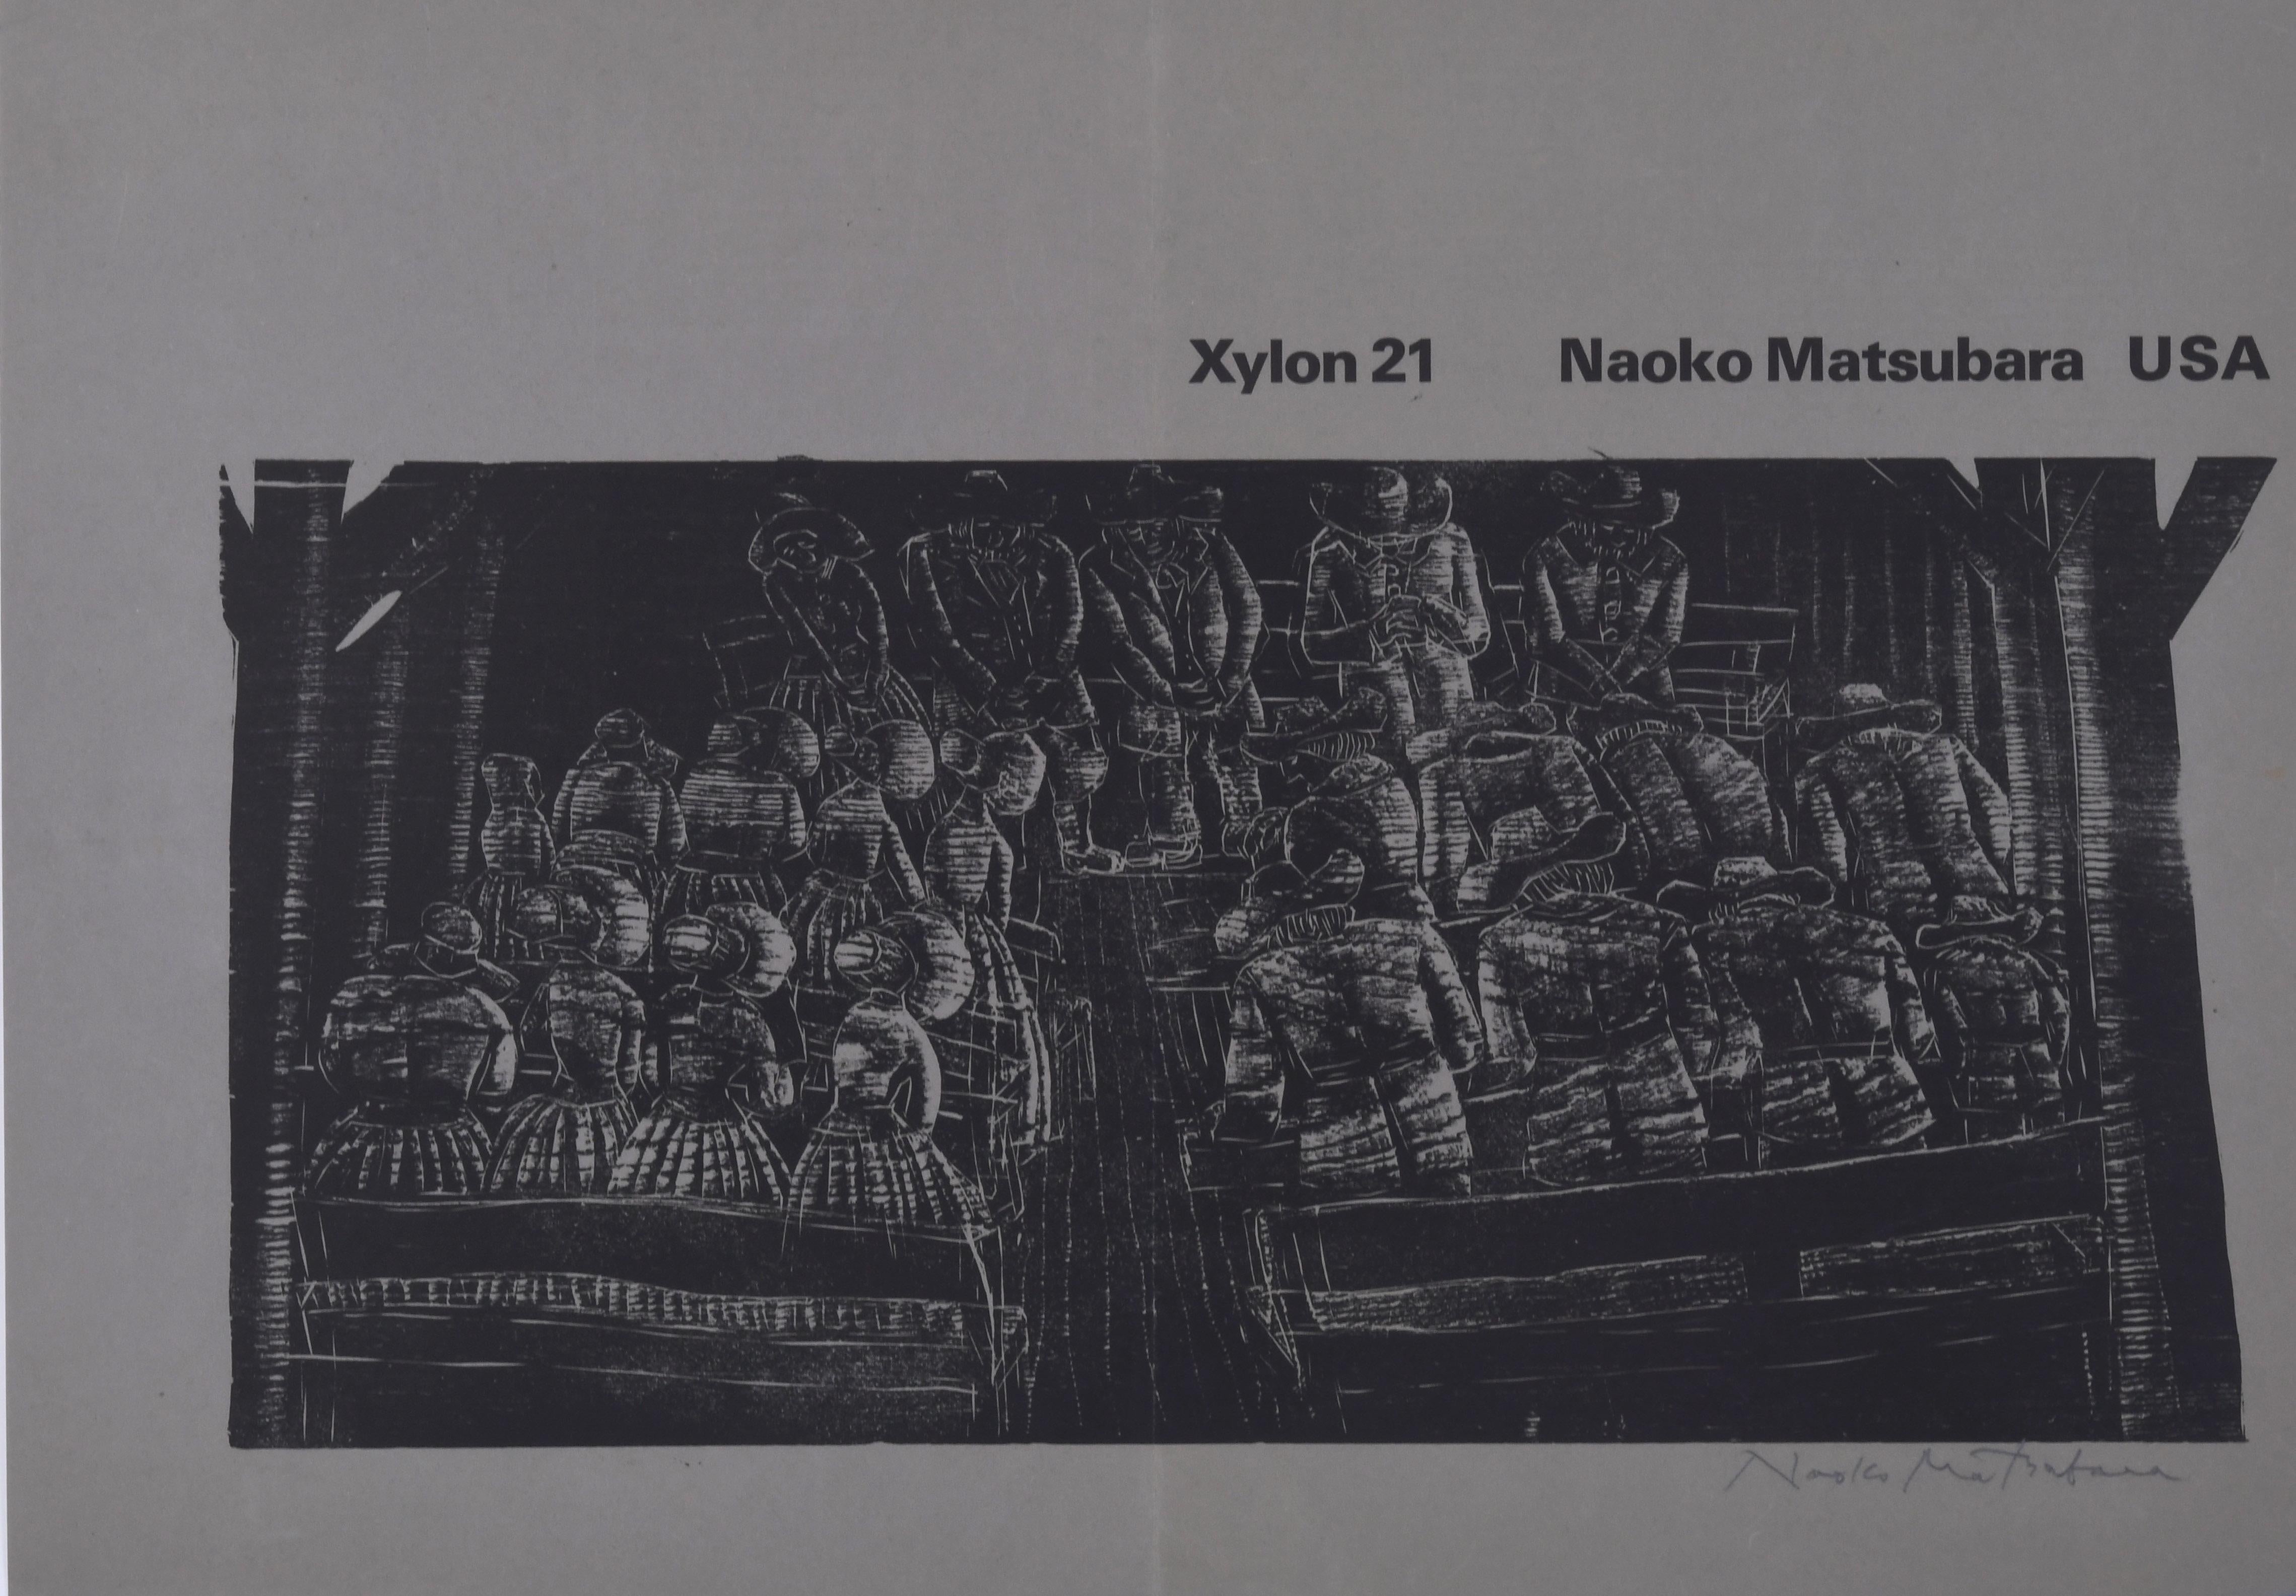 Xylon 21 Naoko Matsubara USA - Print by Nakao Matsubara